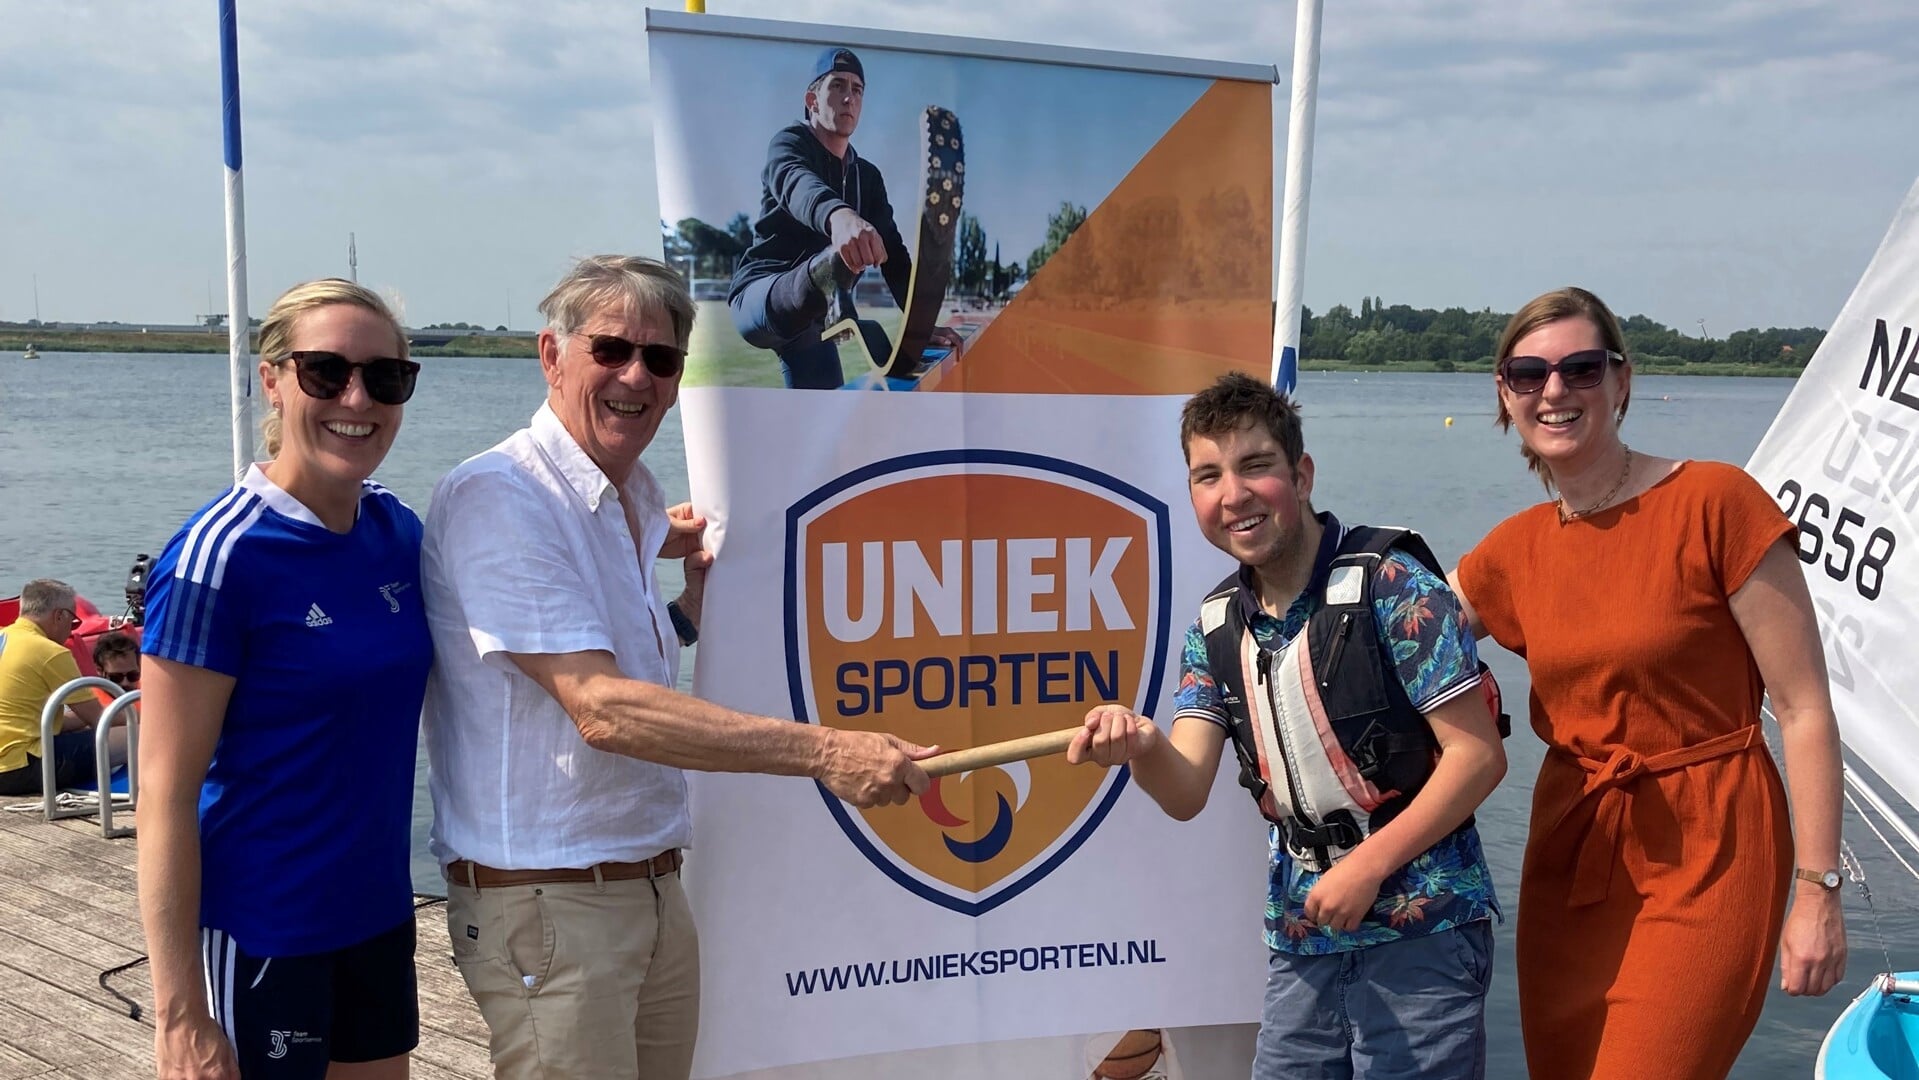 Regiocoördinator aangepast sporten Nikki Hakkesteegt, wethouder Sport Ouder-Amstel Victor Frequin, g-zeiler Thijmen en raadslid Sonja van ’t Hoff.